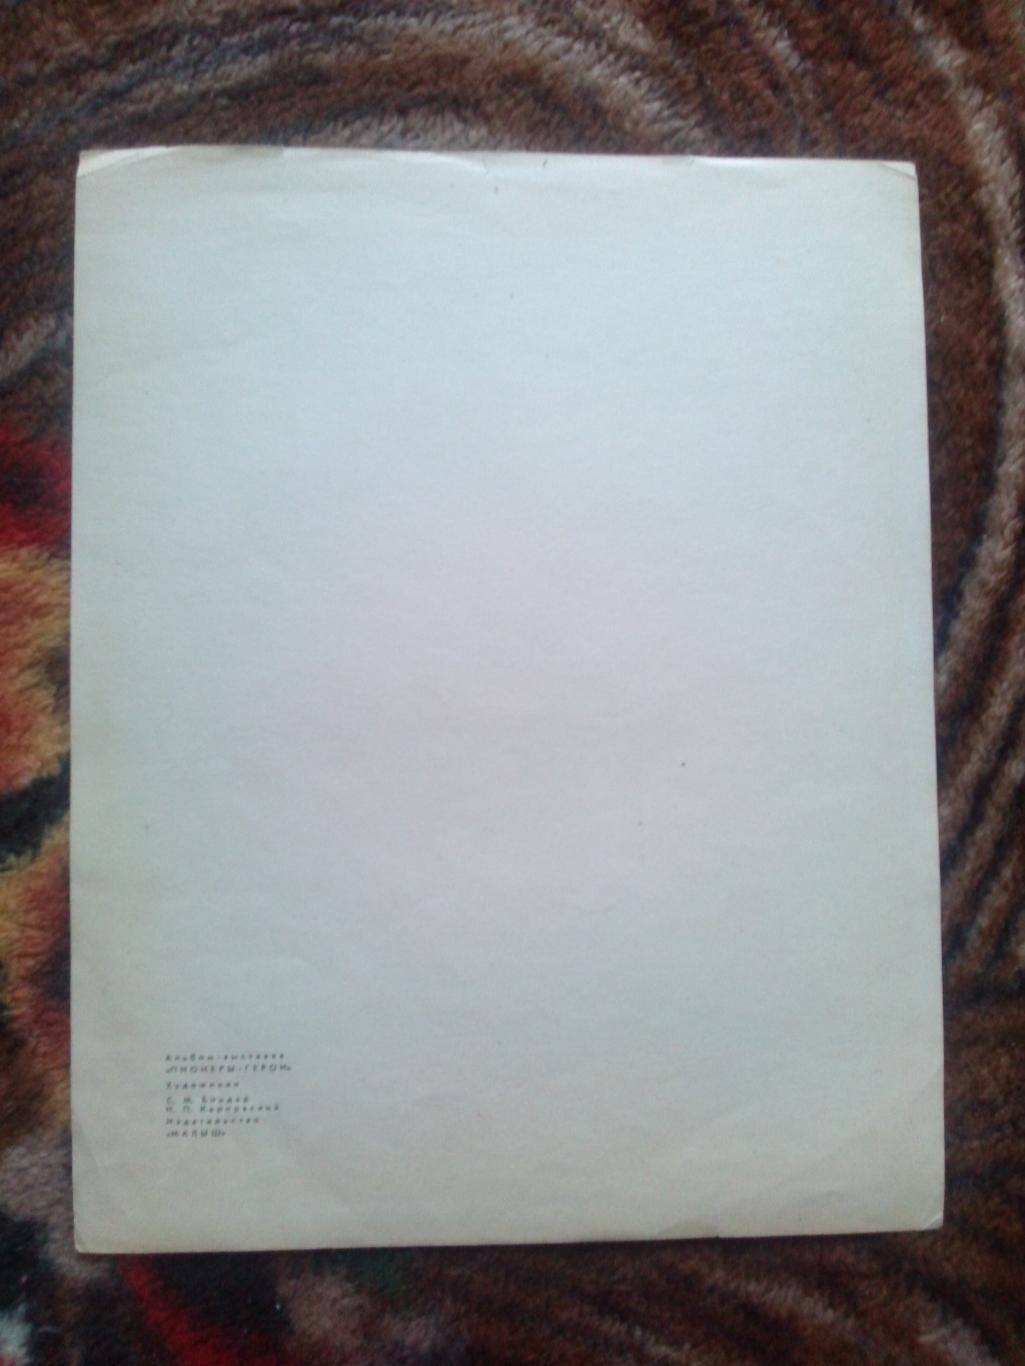 Пионеры-герои (Плакат + брошюра) 1967 г. Володя Дубинин (Пионер , агитация) 2